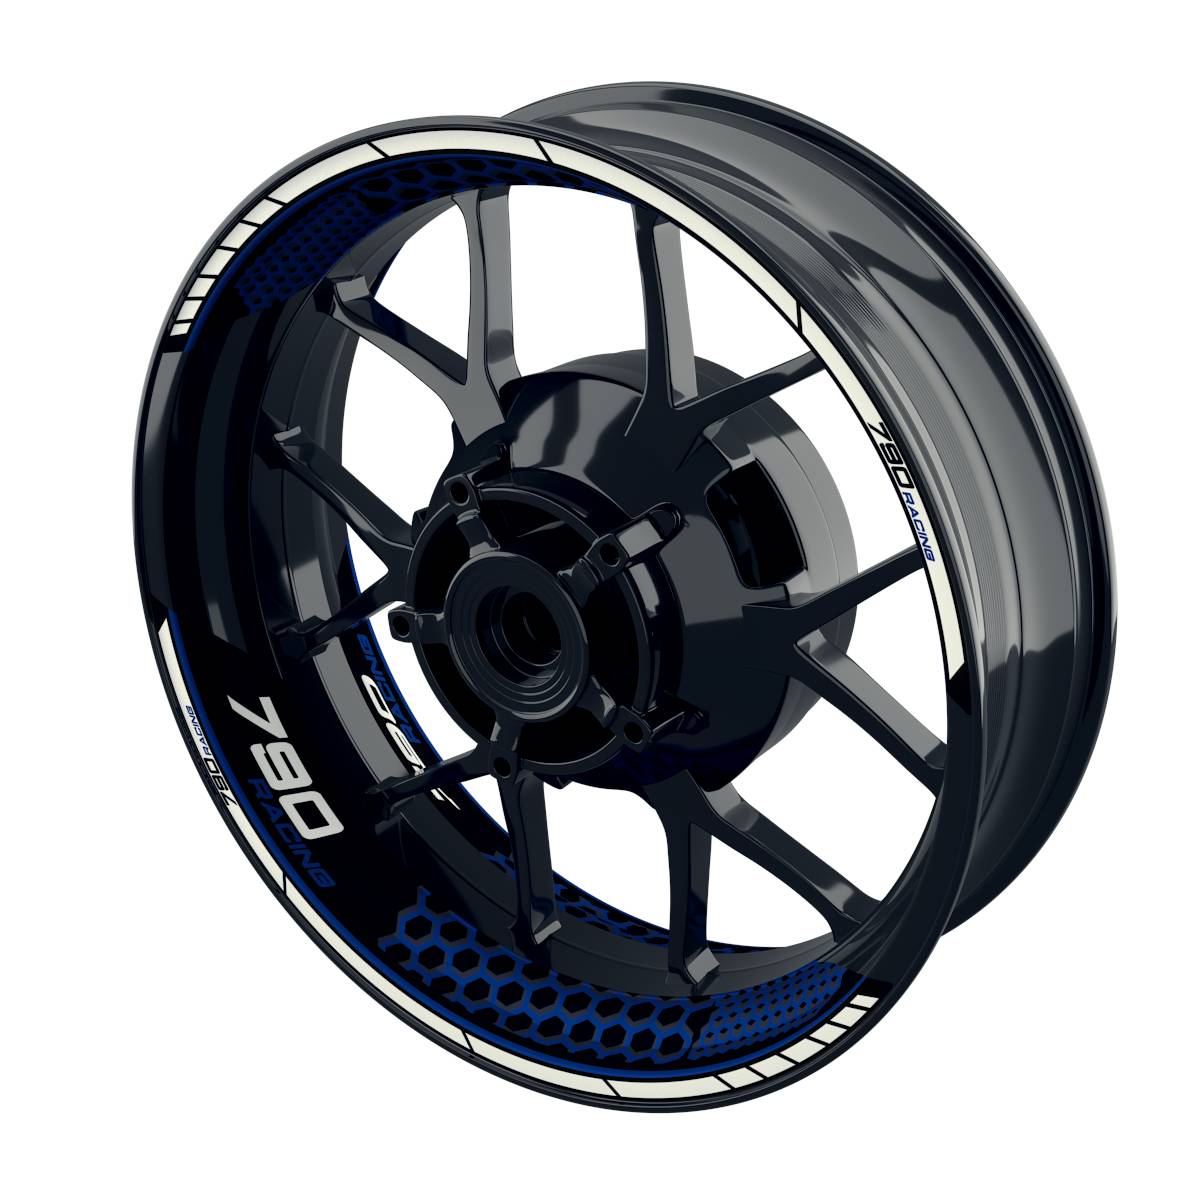 Racing 790 Hexagon Rim Decals Wheelsticker Premium splitted